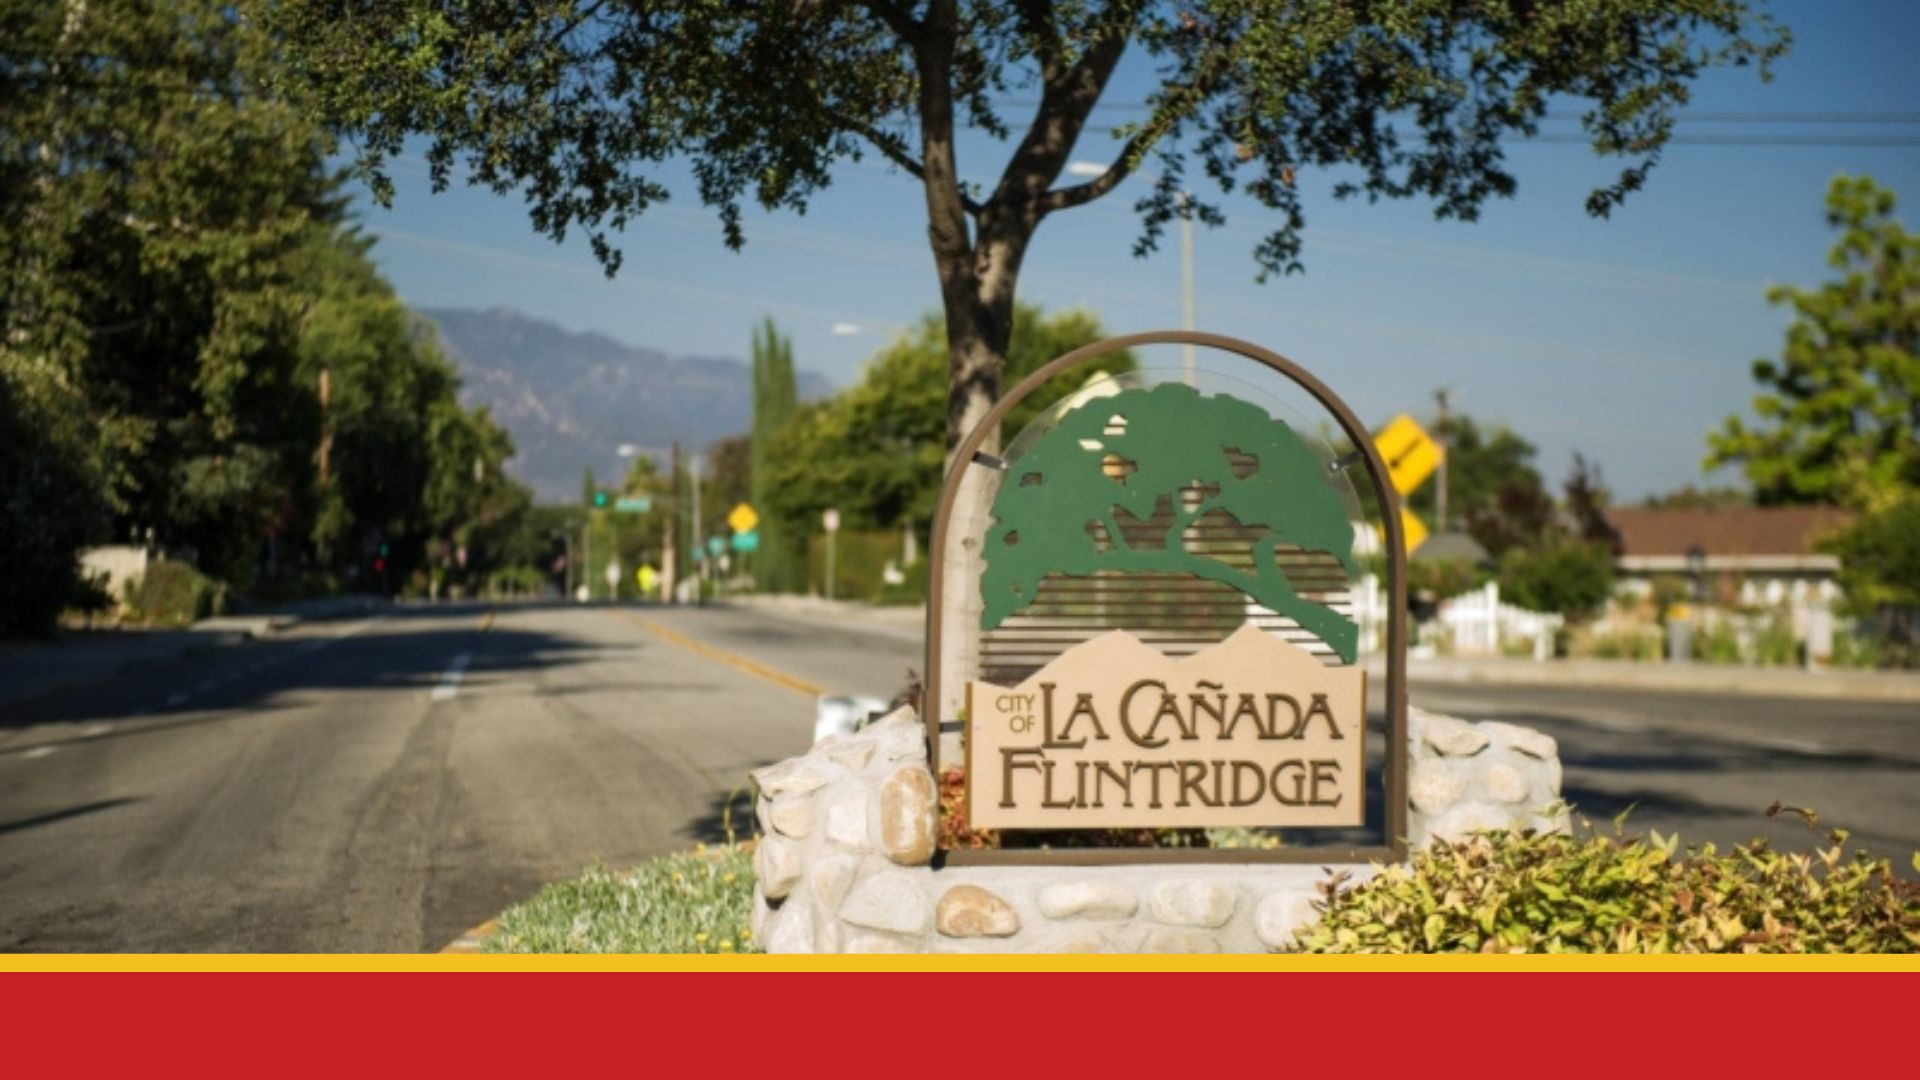 Street median in the City of La Cañada Flintridge with sculpture of La Cañada Flintridge logo